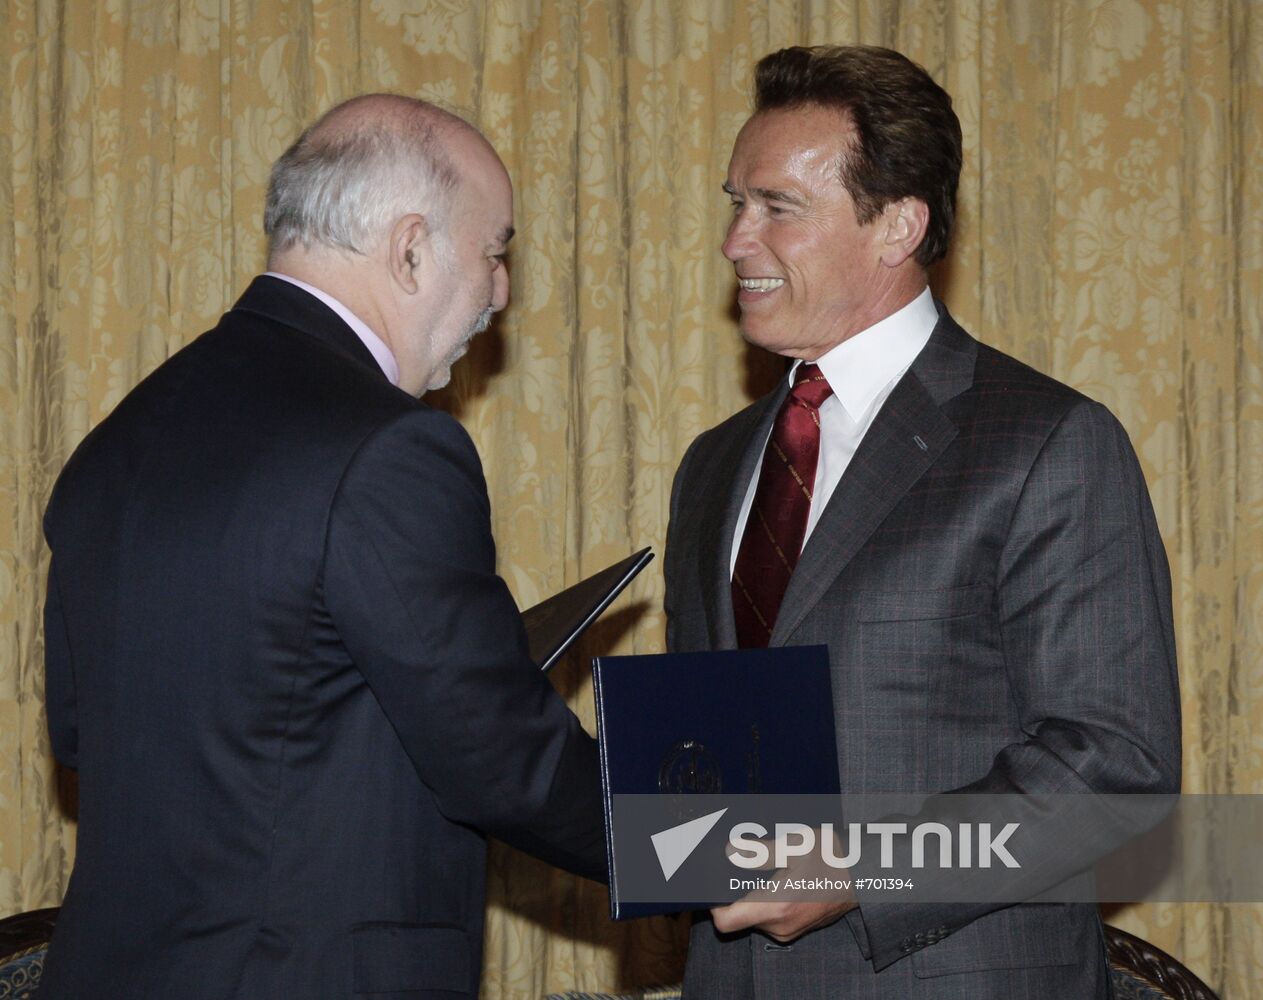 Viktor Vekselberg and Arnold Schwarzenegger